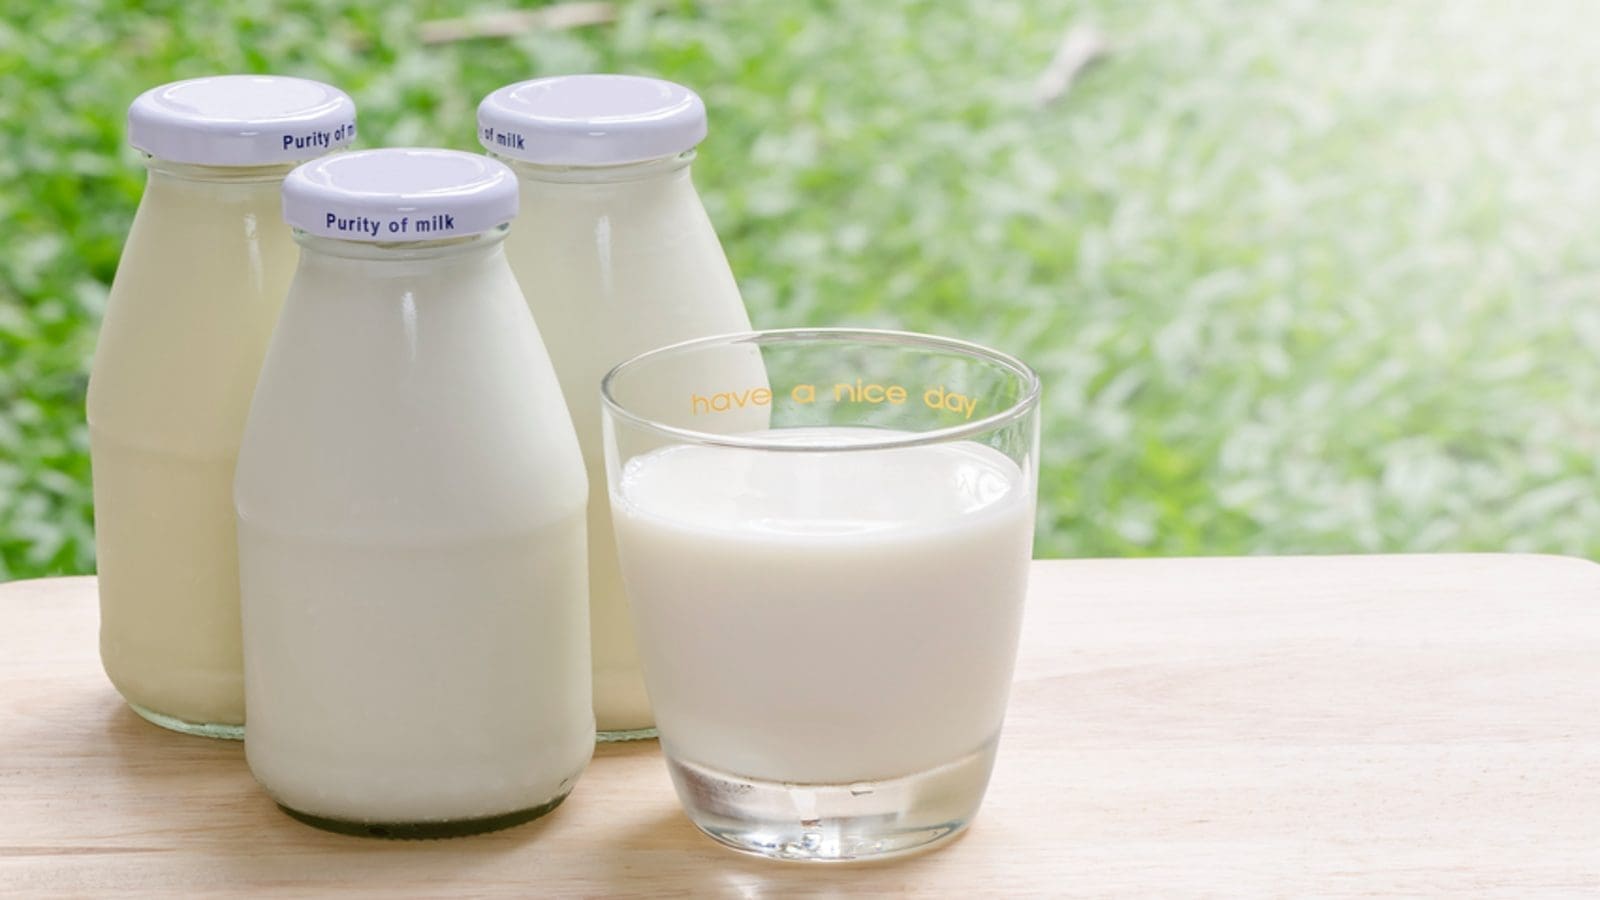 Tanzania Dairy Board requires US$1.4M for school milk program